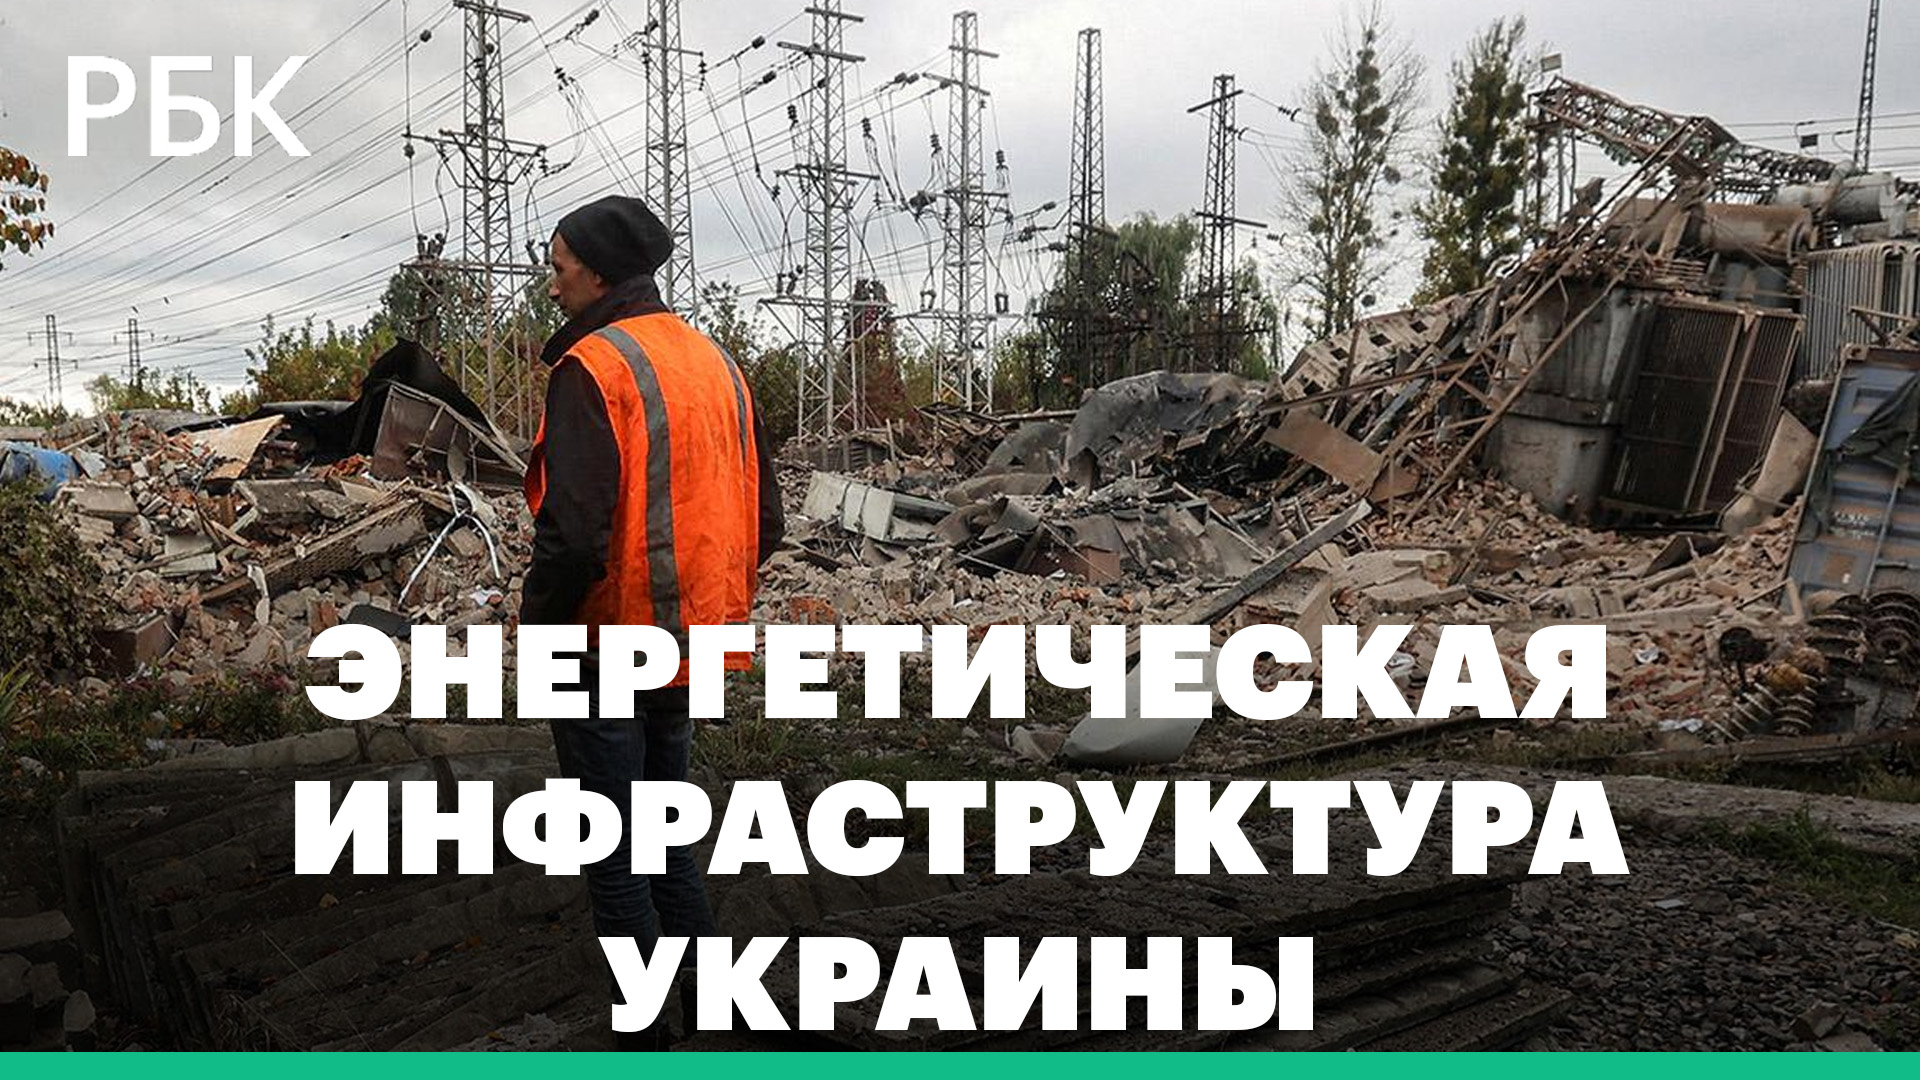 Состояние энергетической инфраструктуры Украины